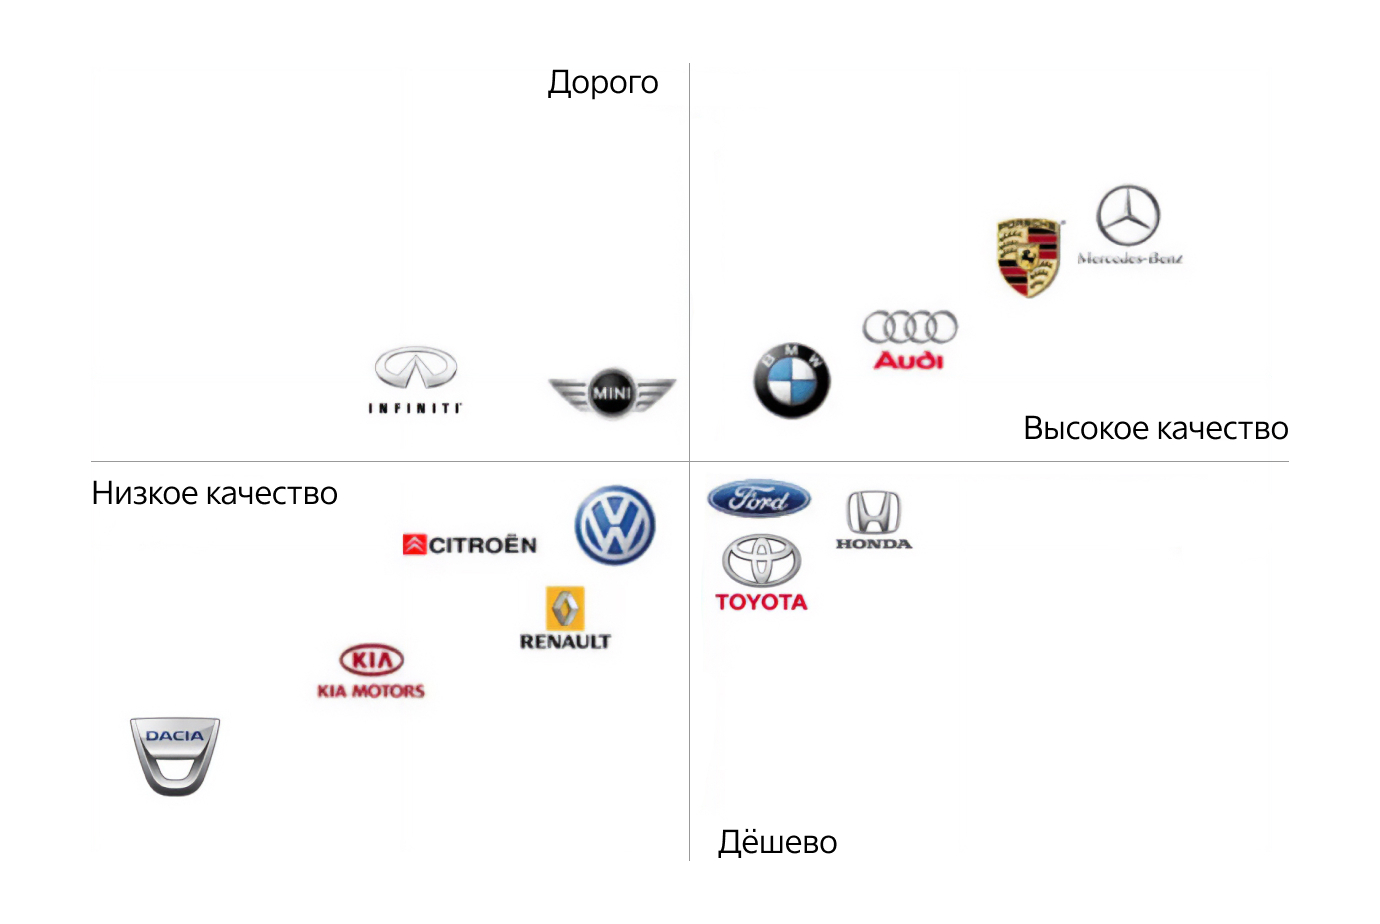 Пример карты позиционирования брендов легковых автомобилей 